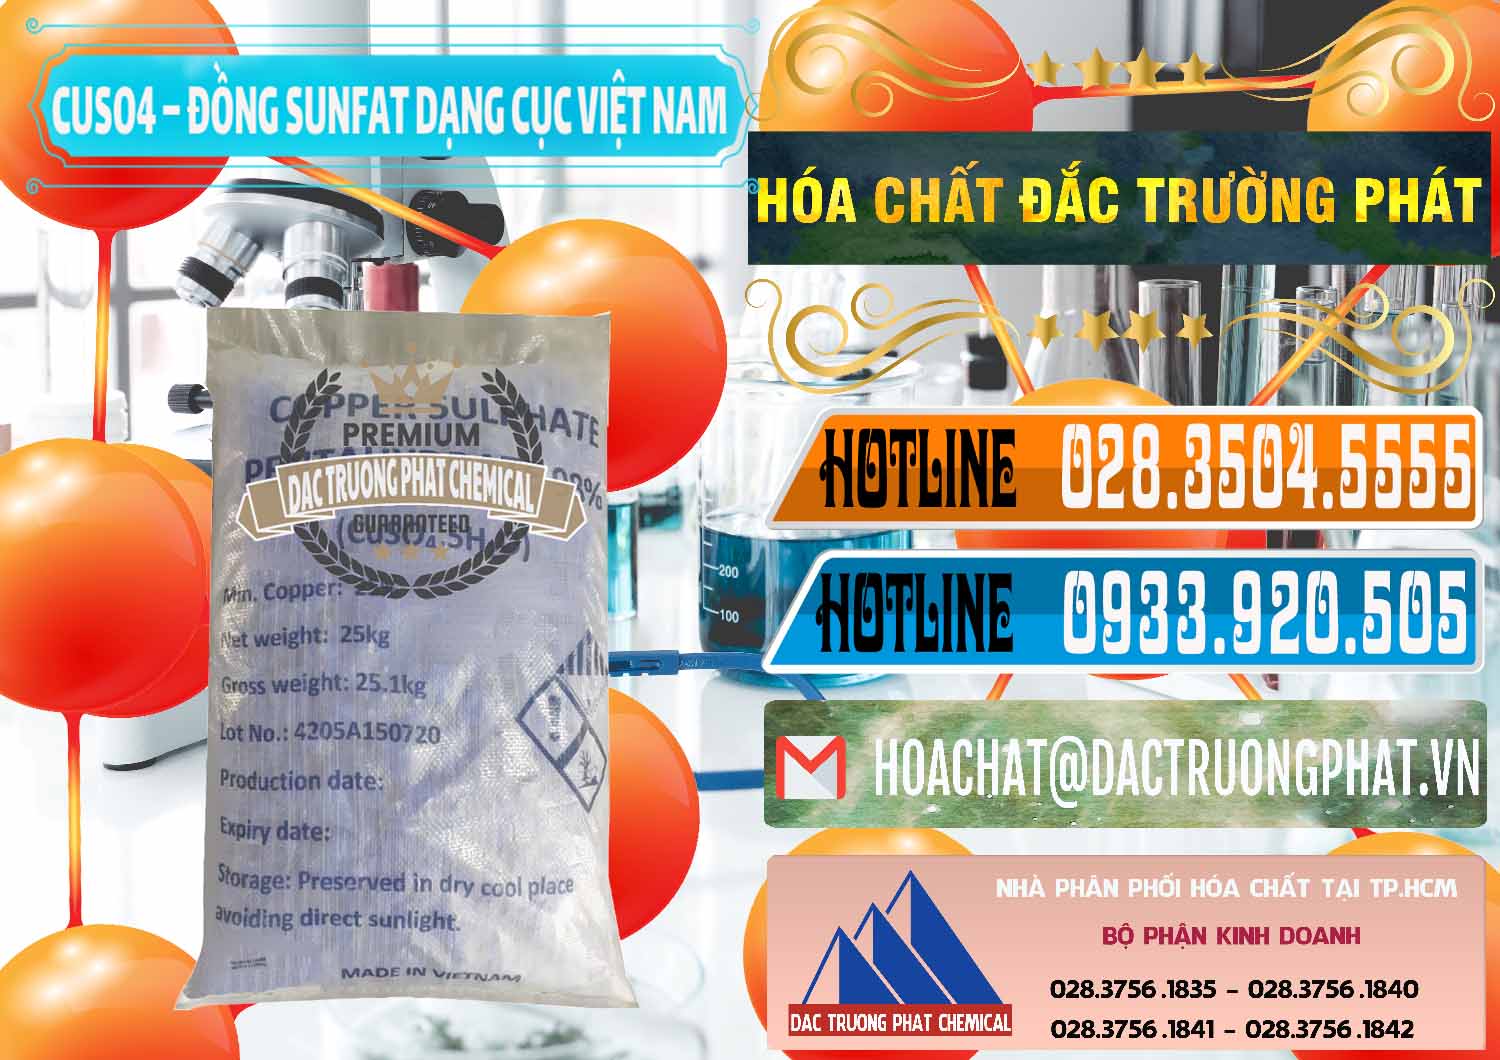 Công ty chuyên cung cấp và bán CUSO4 – Đồng Sunfat Dạng Cục Việt Nam - 0303 - Cty chuyên cung cấp và bán hóa chất tại TP.HCM - stmp.net